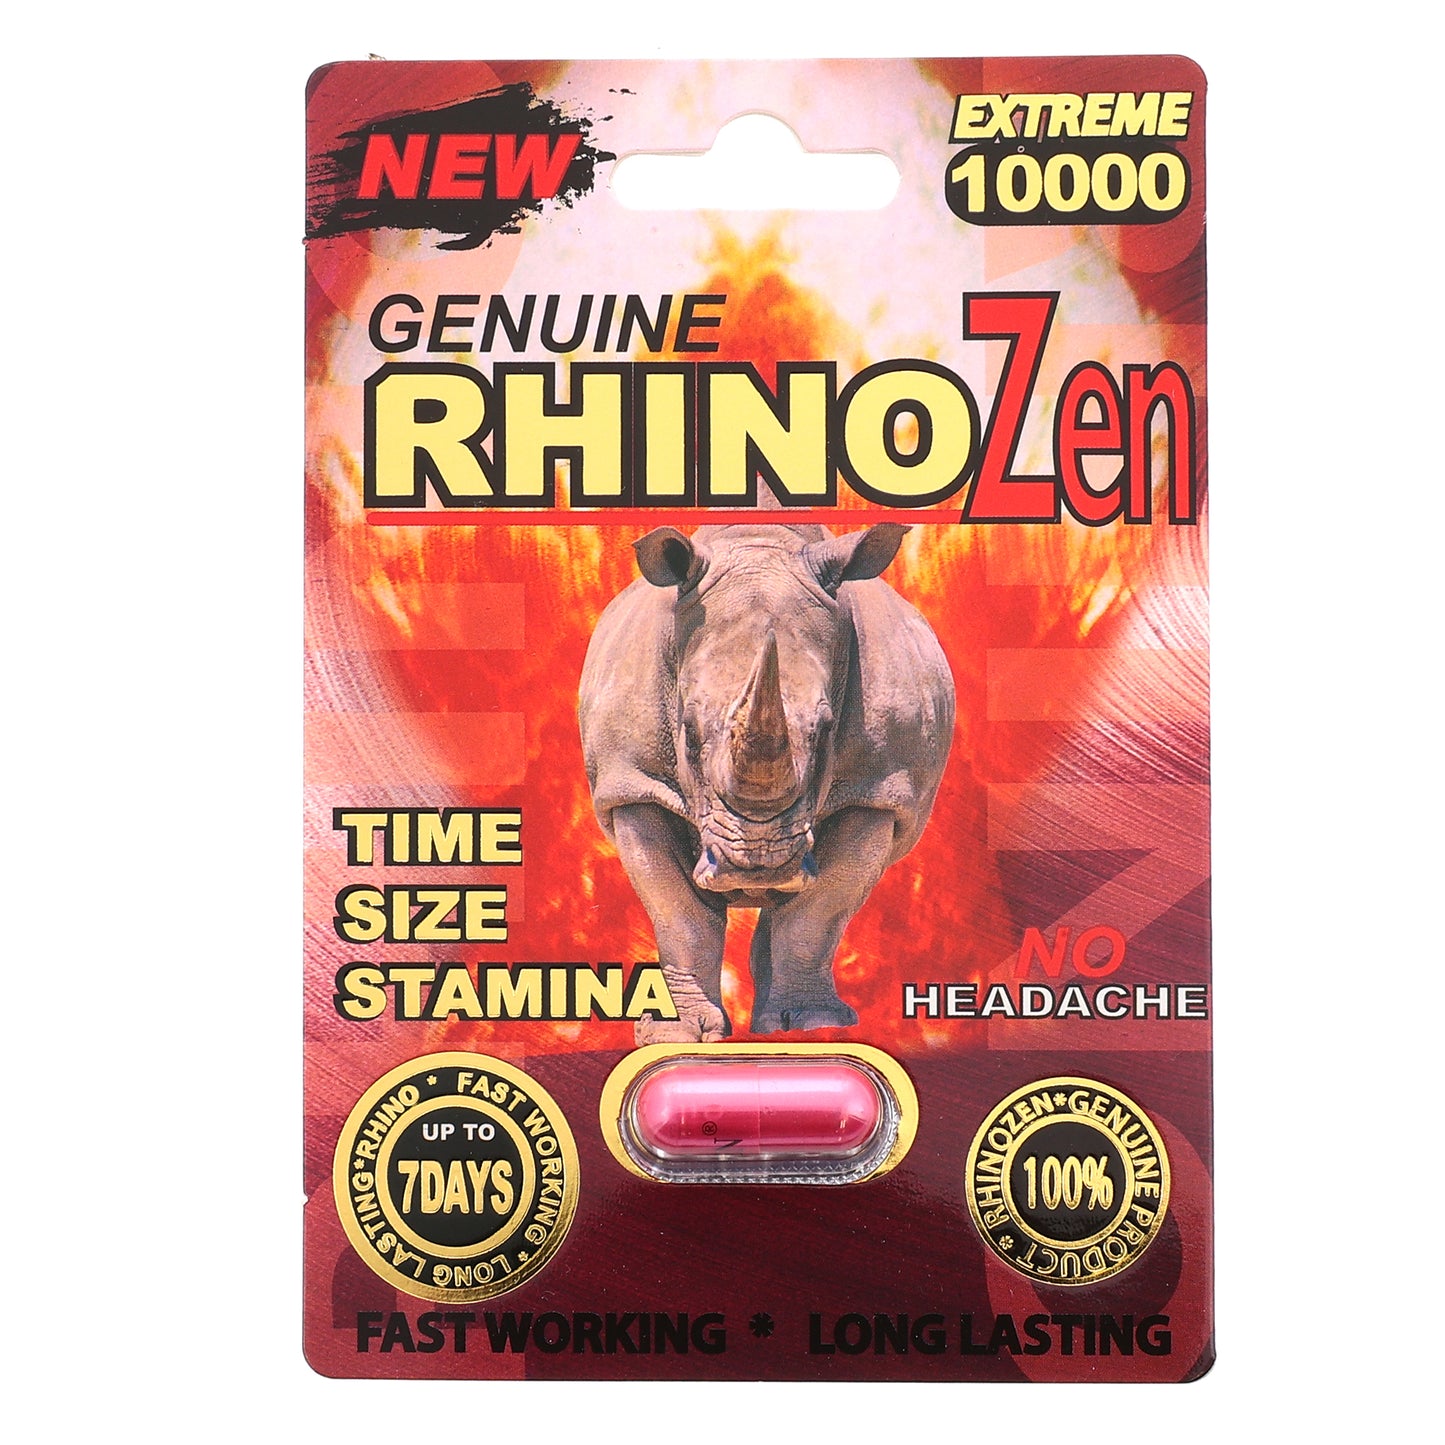 Rhino Zen Extreme 10000